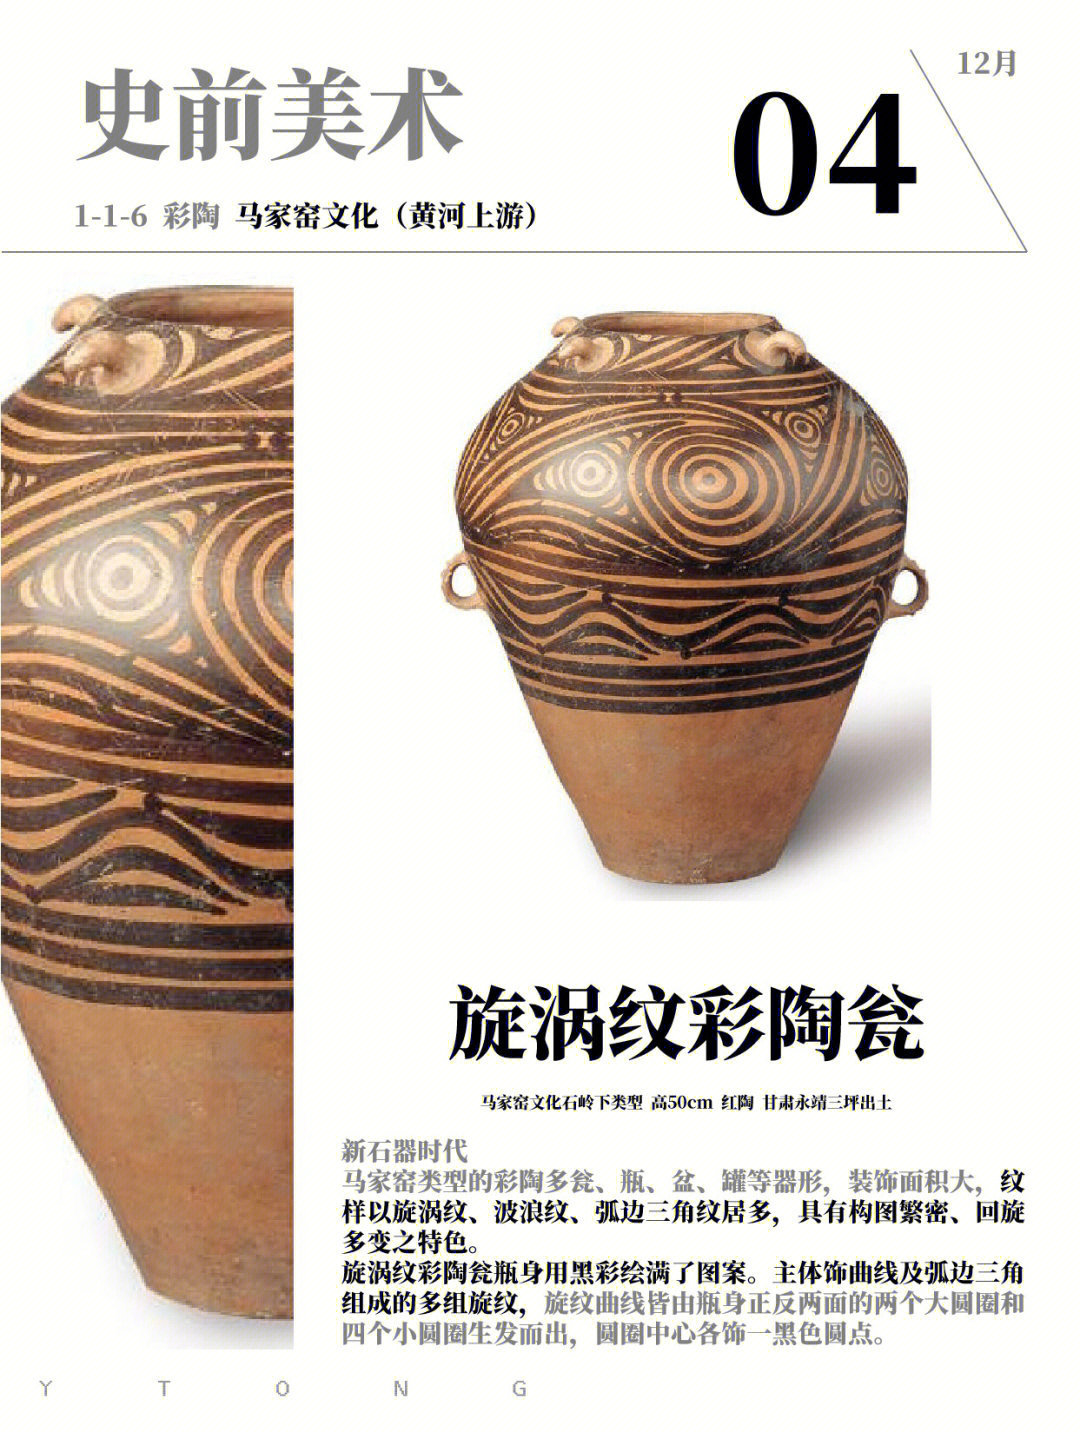 史前美术马家窑文化彩陶